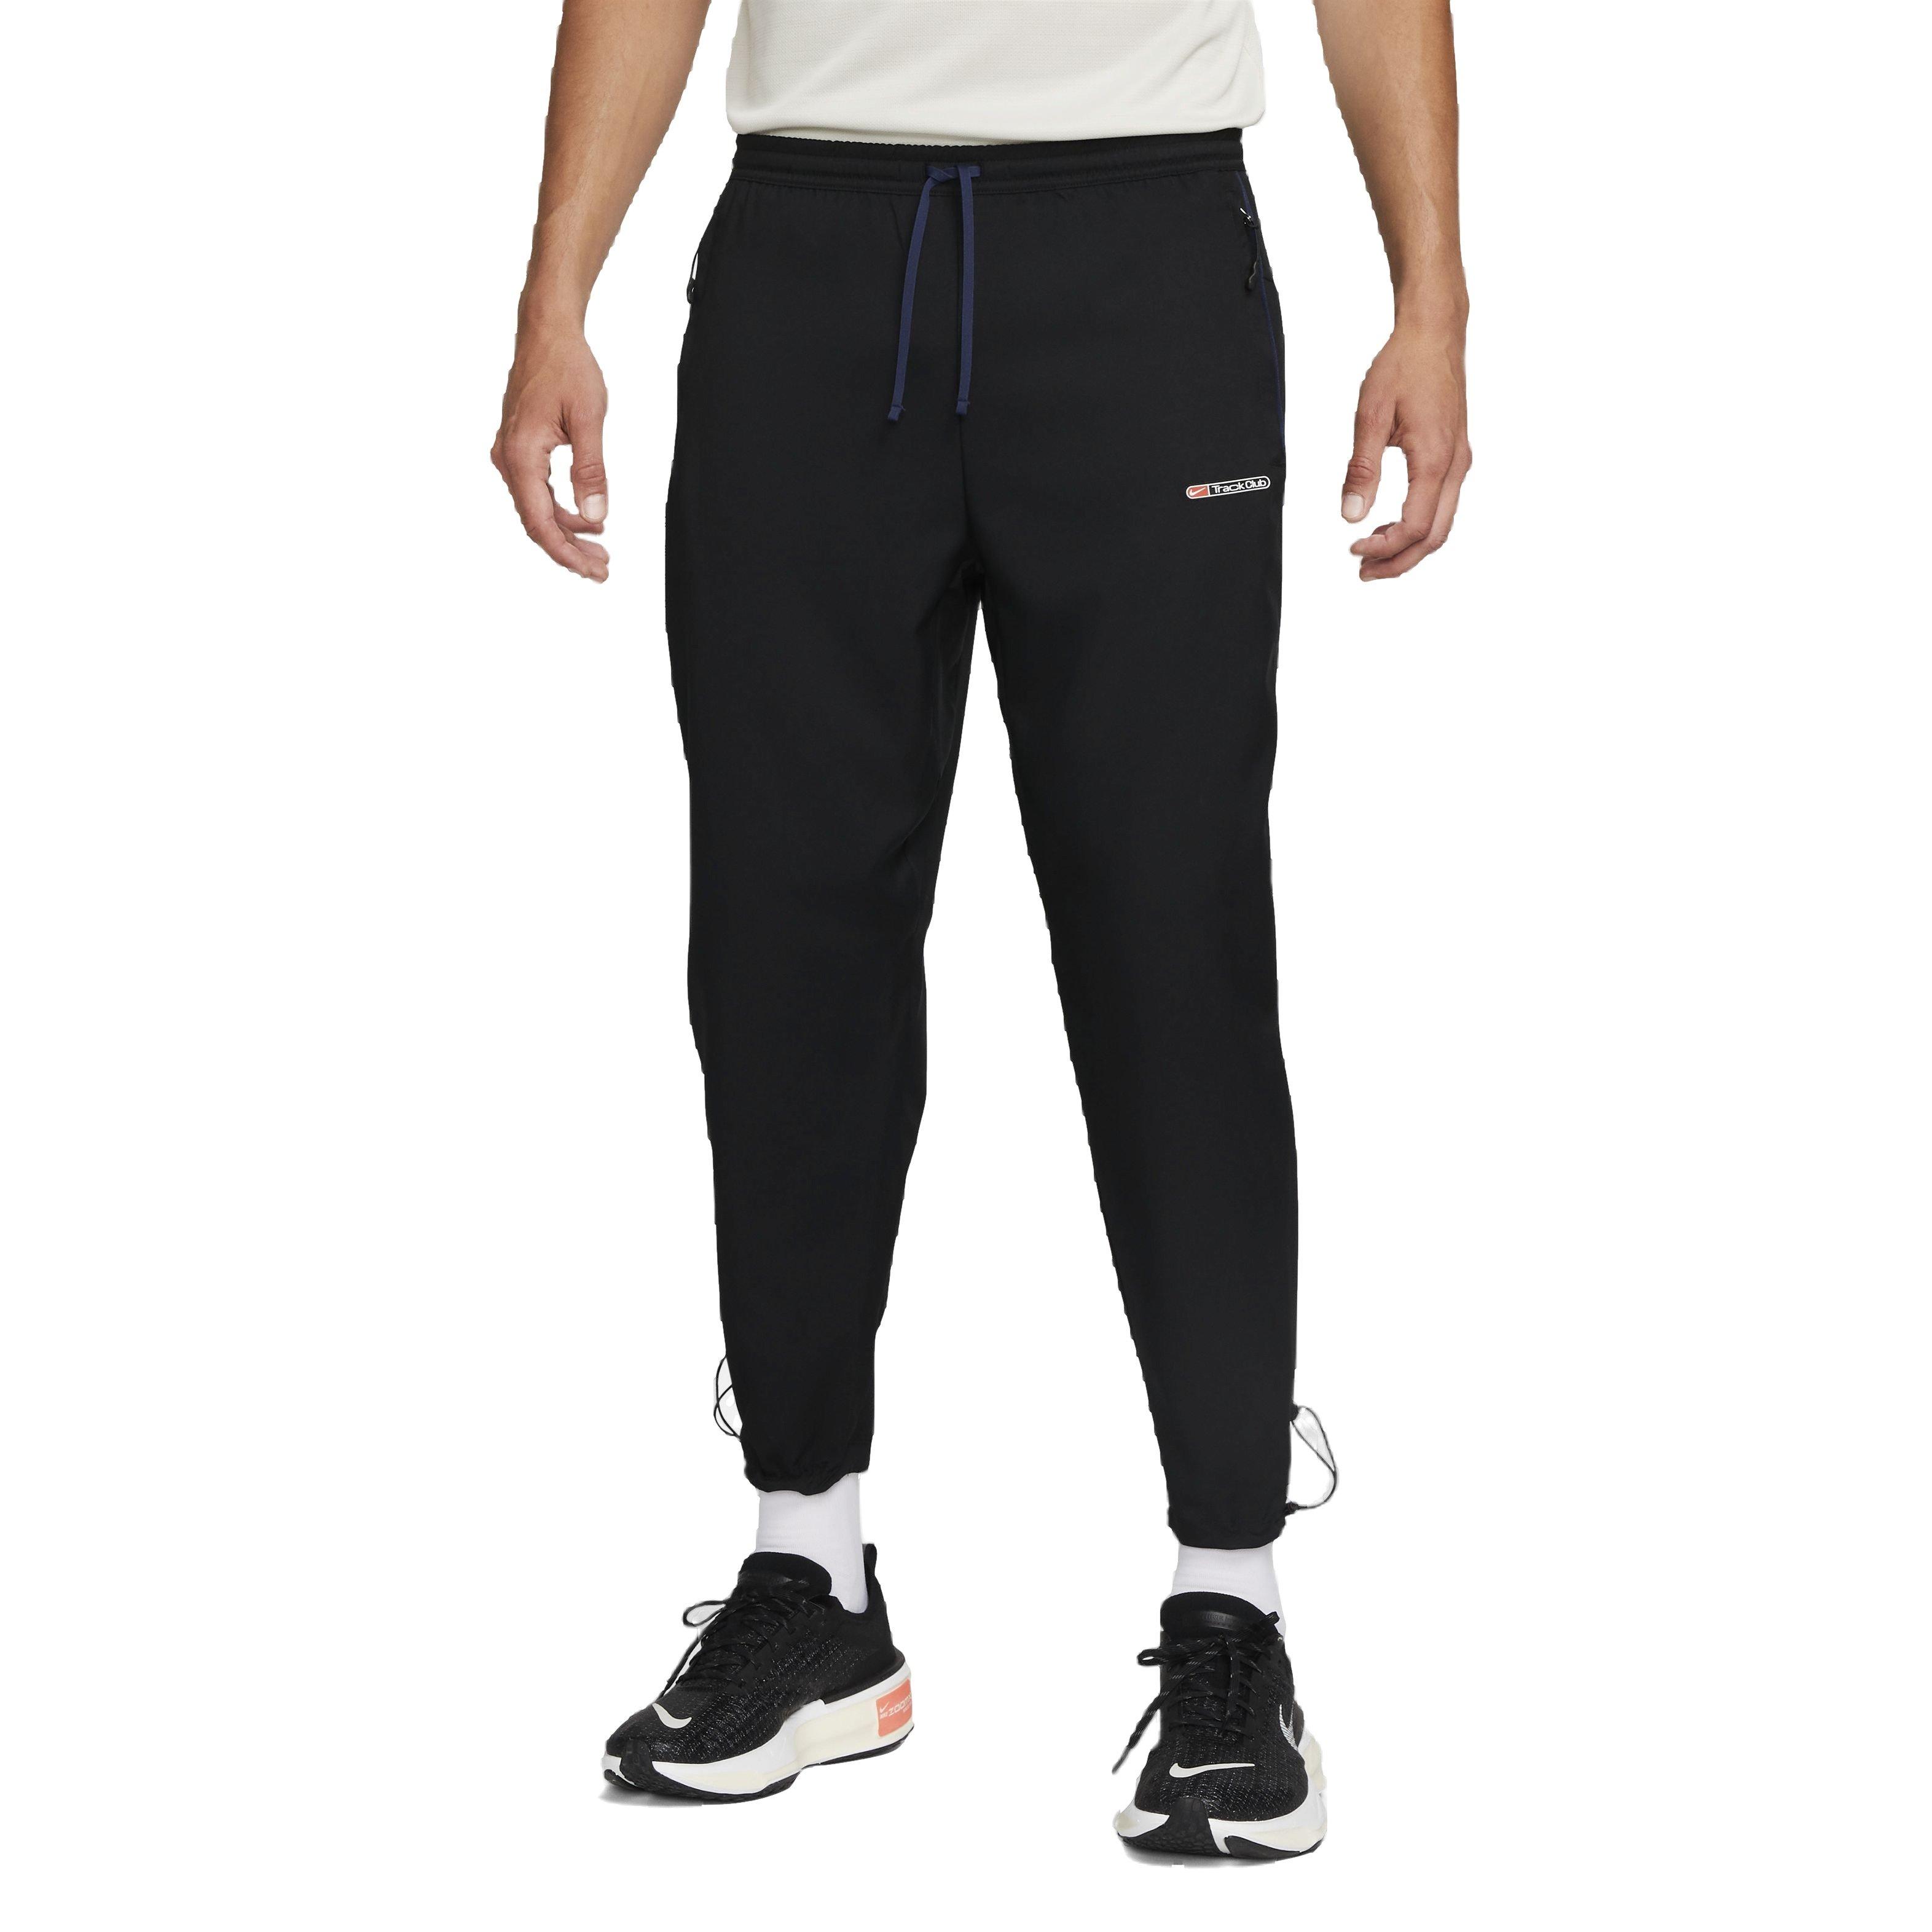 Nike Men's Dri-FIT Epic Knit Training Pants-DK Blue - Hibbett